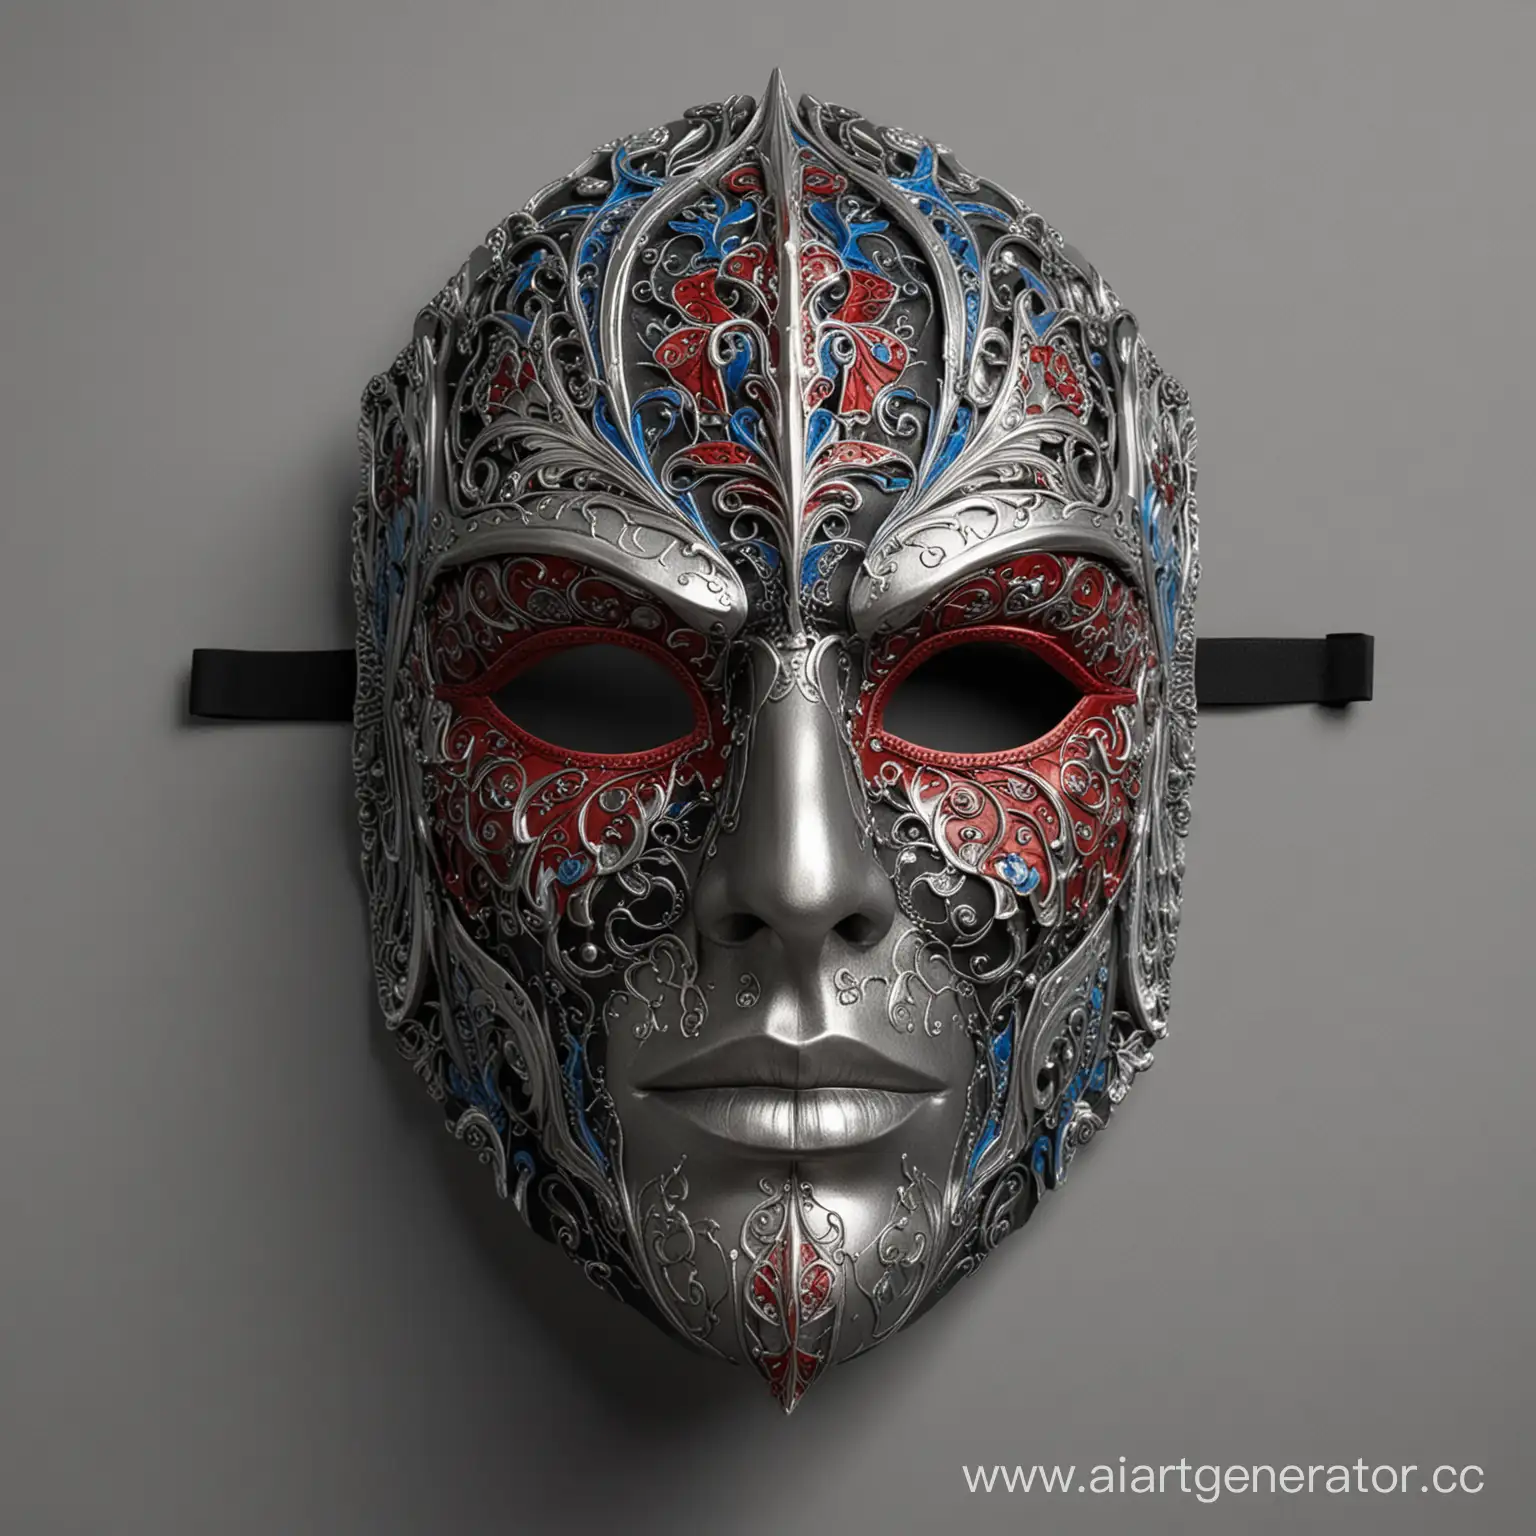 Интерьерная маска Коломбины, со множеством деталей и фактур,  симметричная,  сложно выполненная, в черном, серебряном, белом, красном и голубом цветах